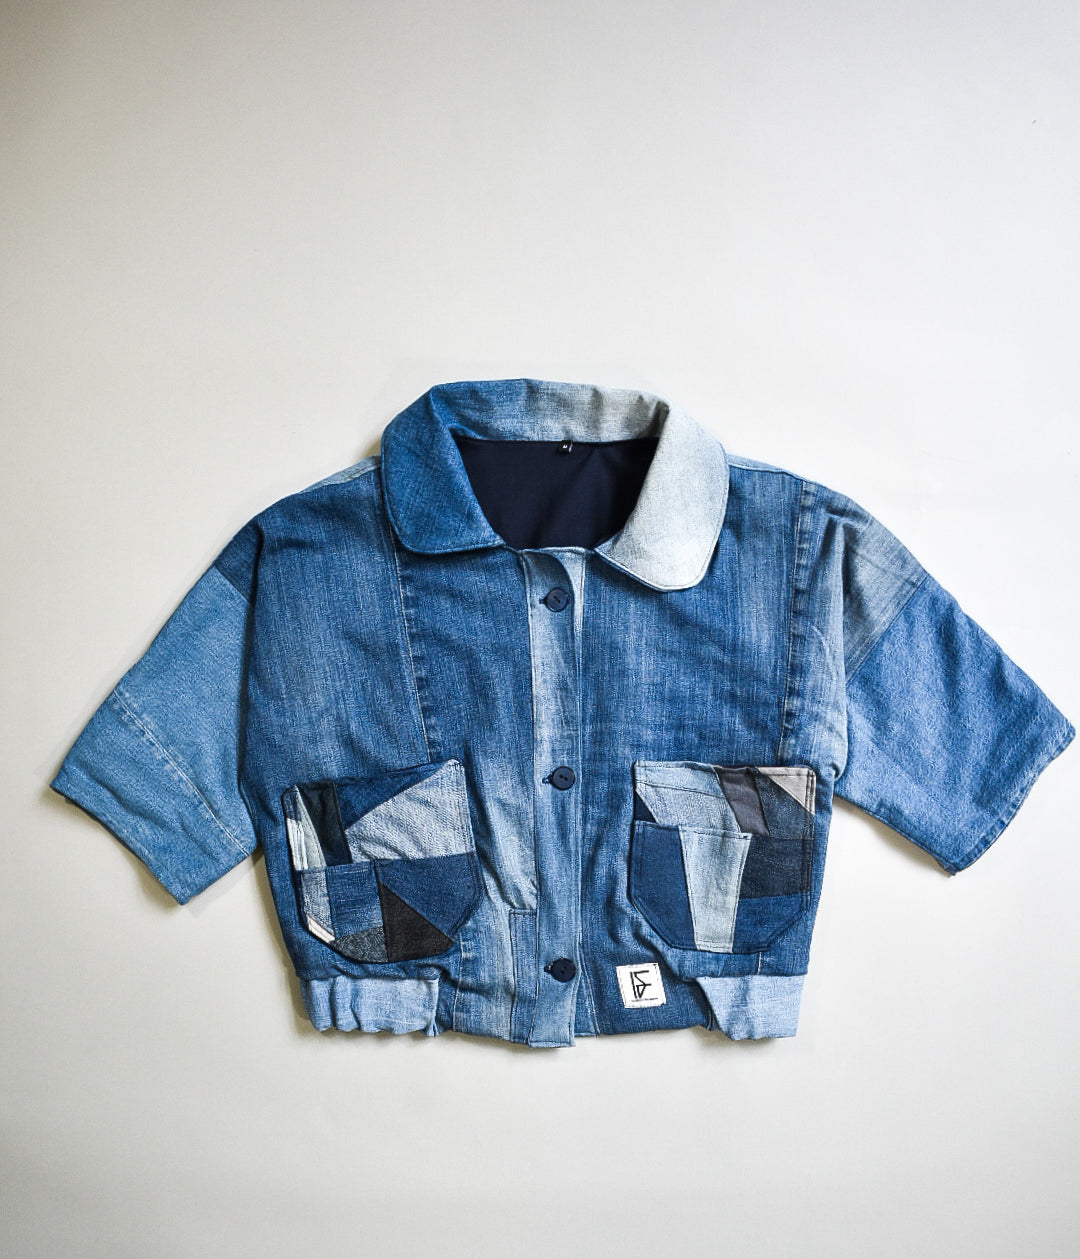 ALS DENIM | Duurzaam handgemaakt cropped vintage jasje M